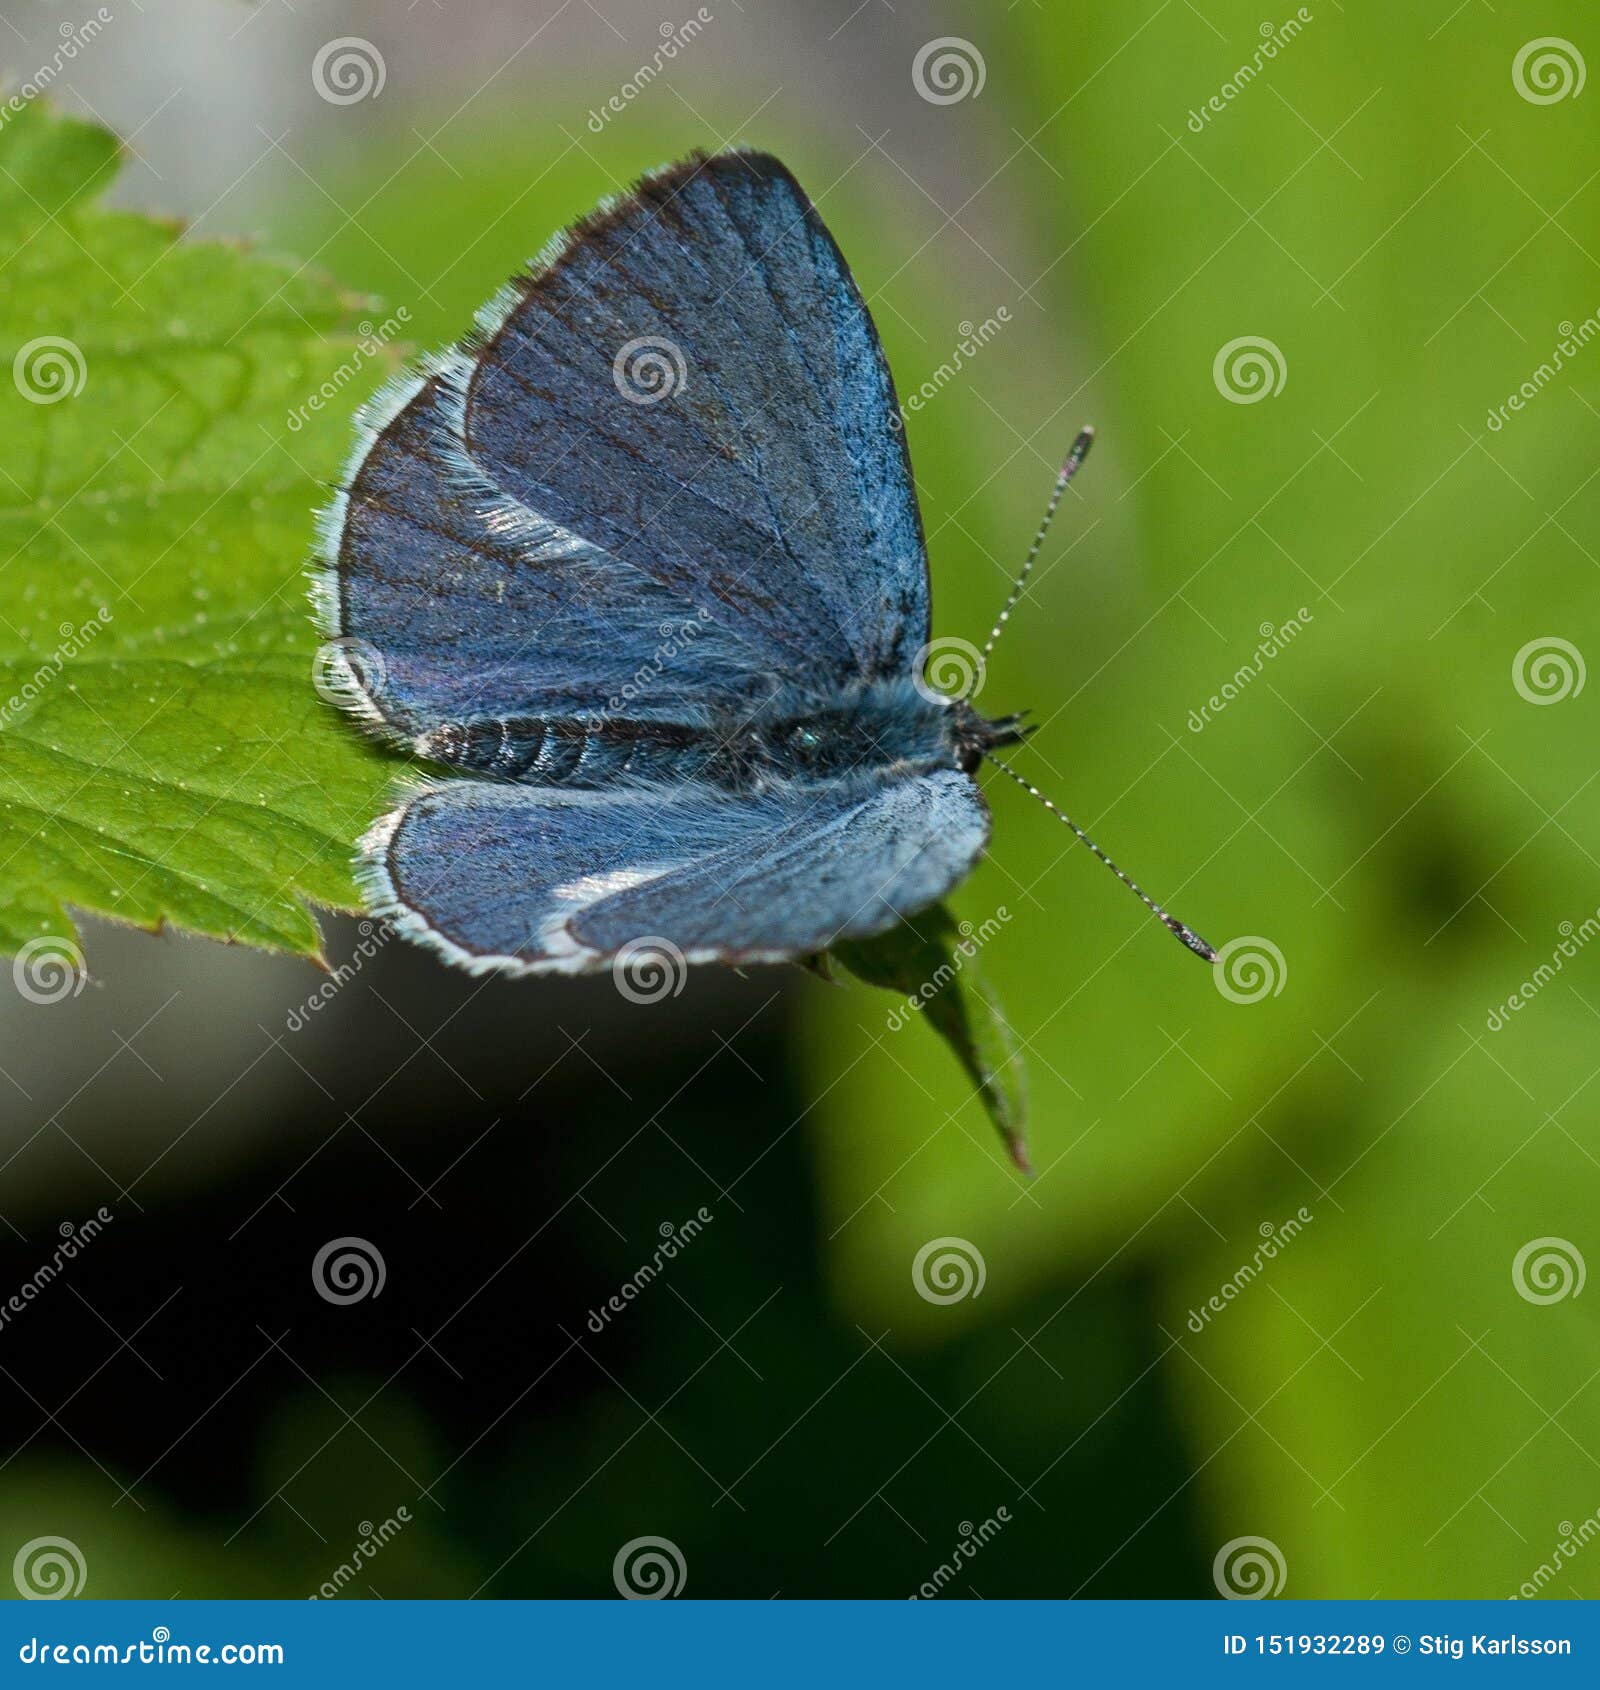 the holly blue celastrina argiolus